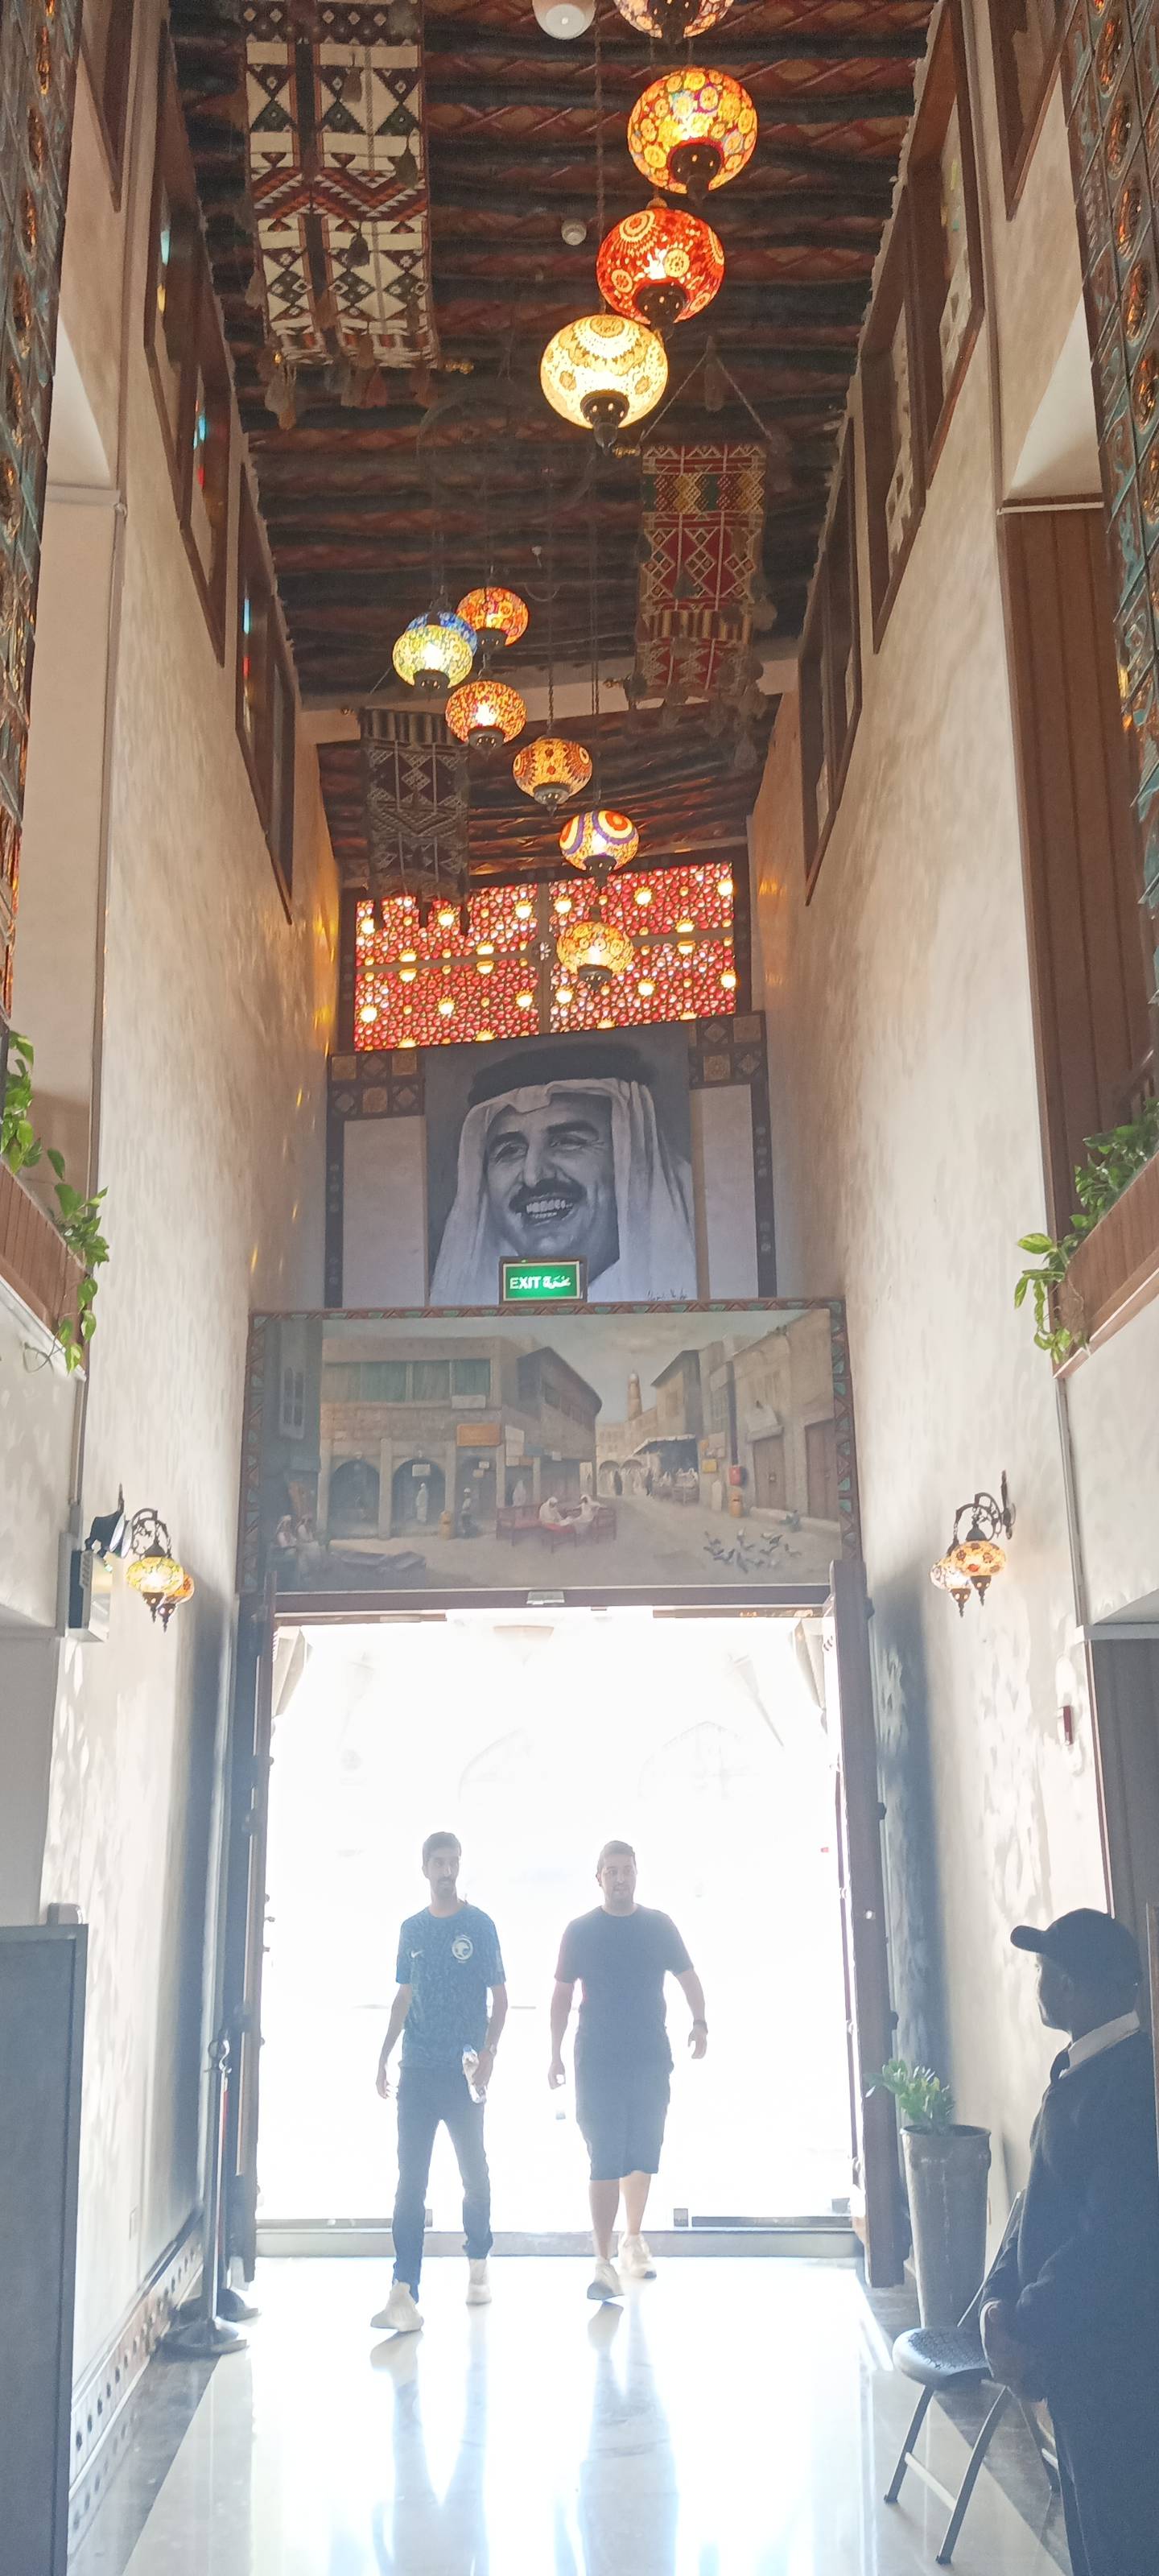 Imágenes de Hamad bin Jalifa Al Thani, el anterior emir de Qatar, se encuentran constantemente en Doha.